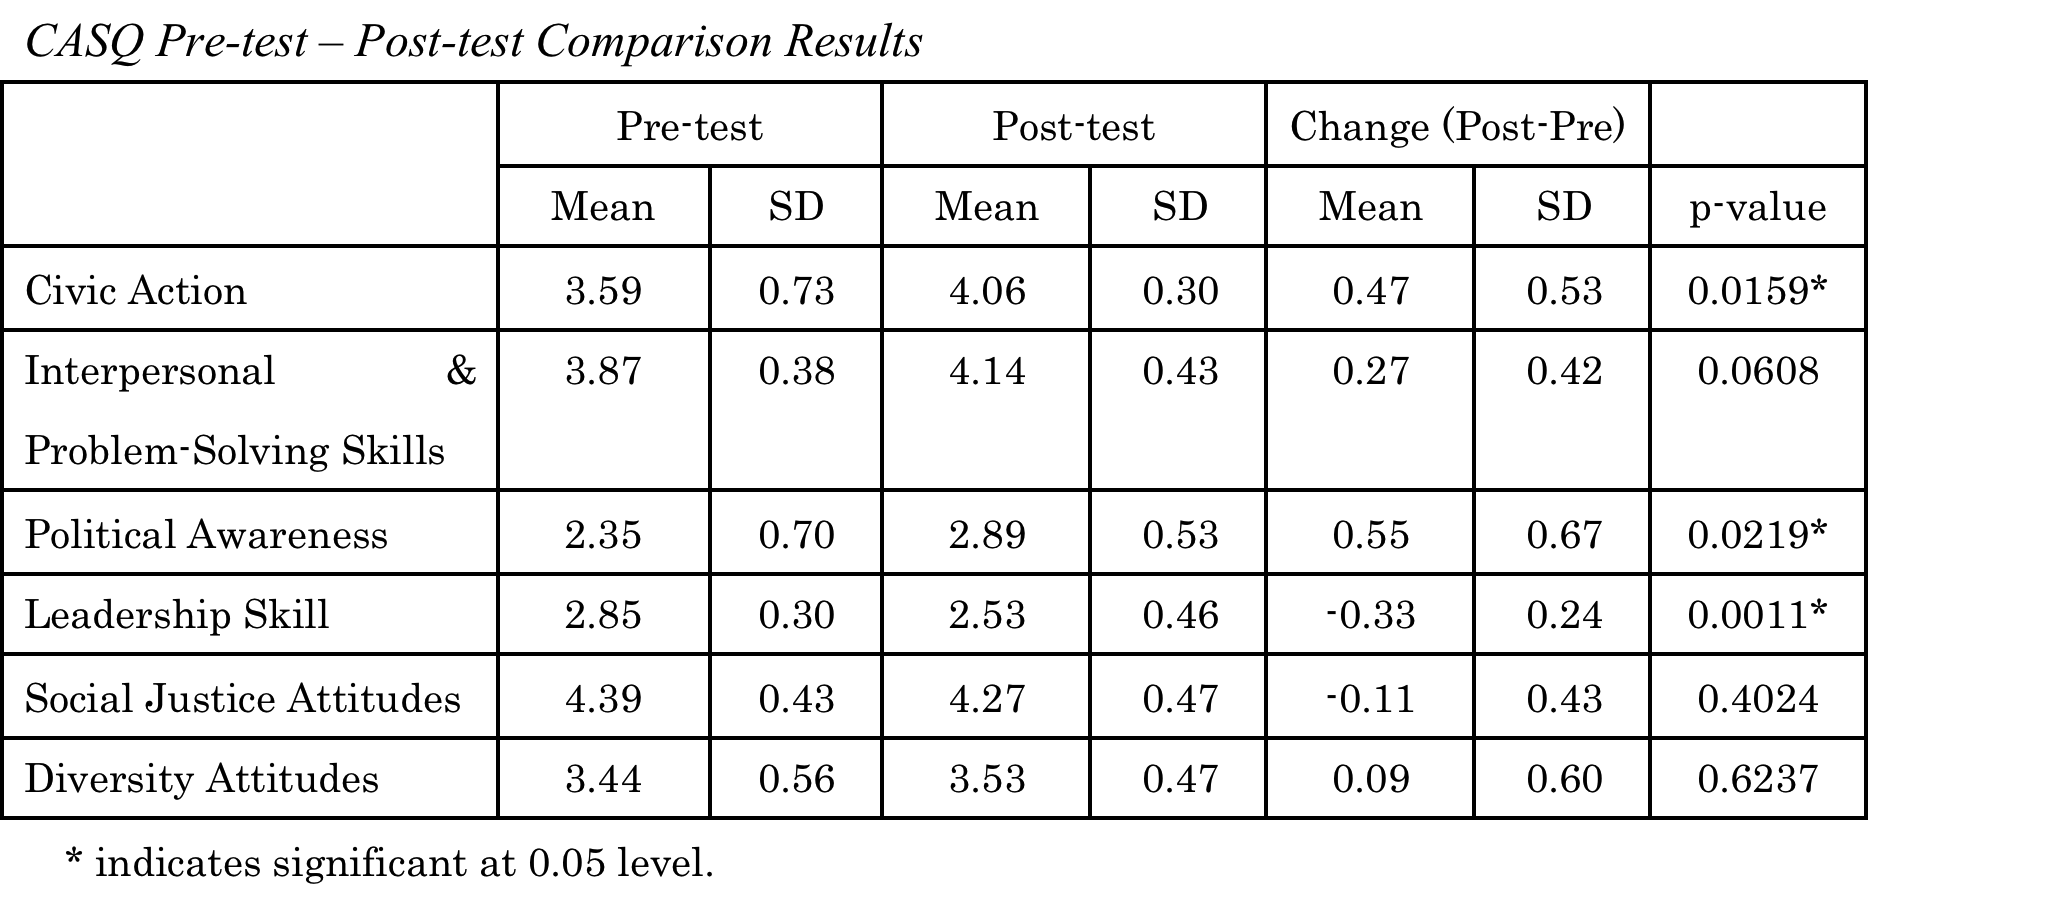 CASQ Pre-test - Post-test Comparison Results